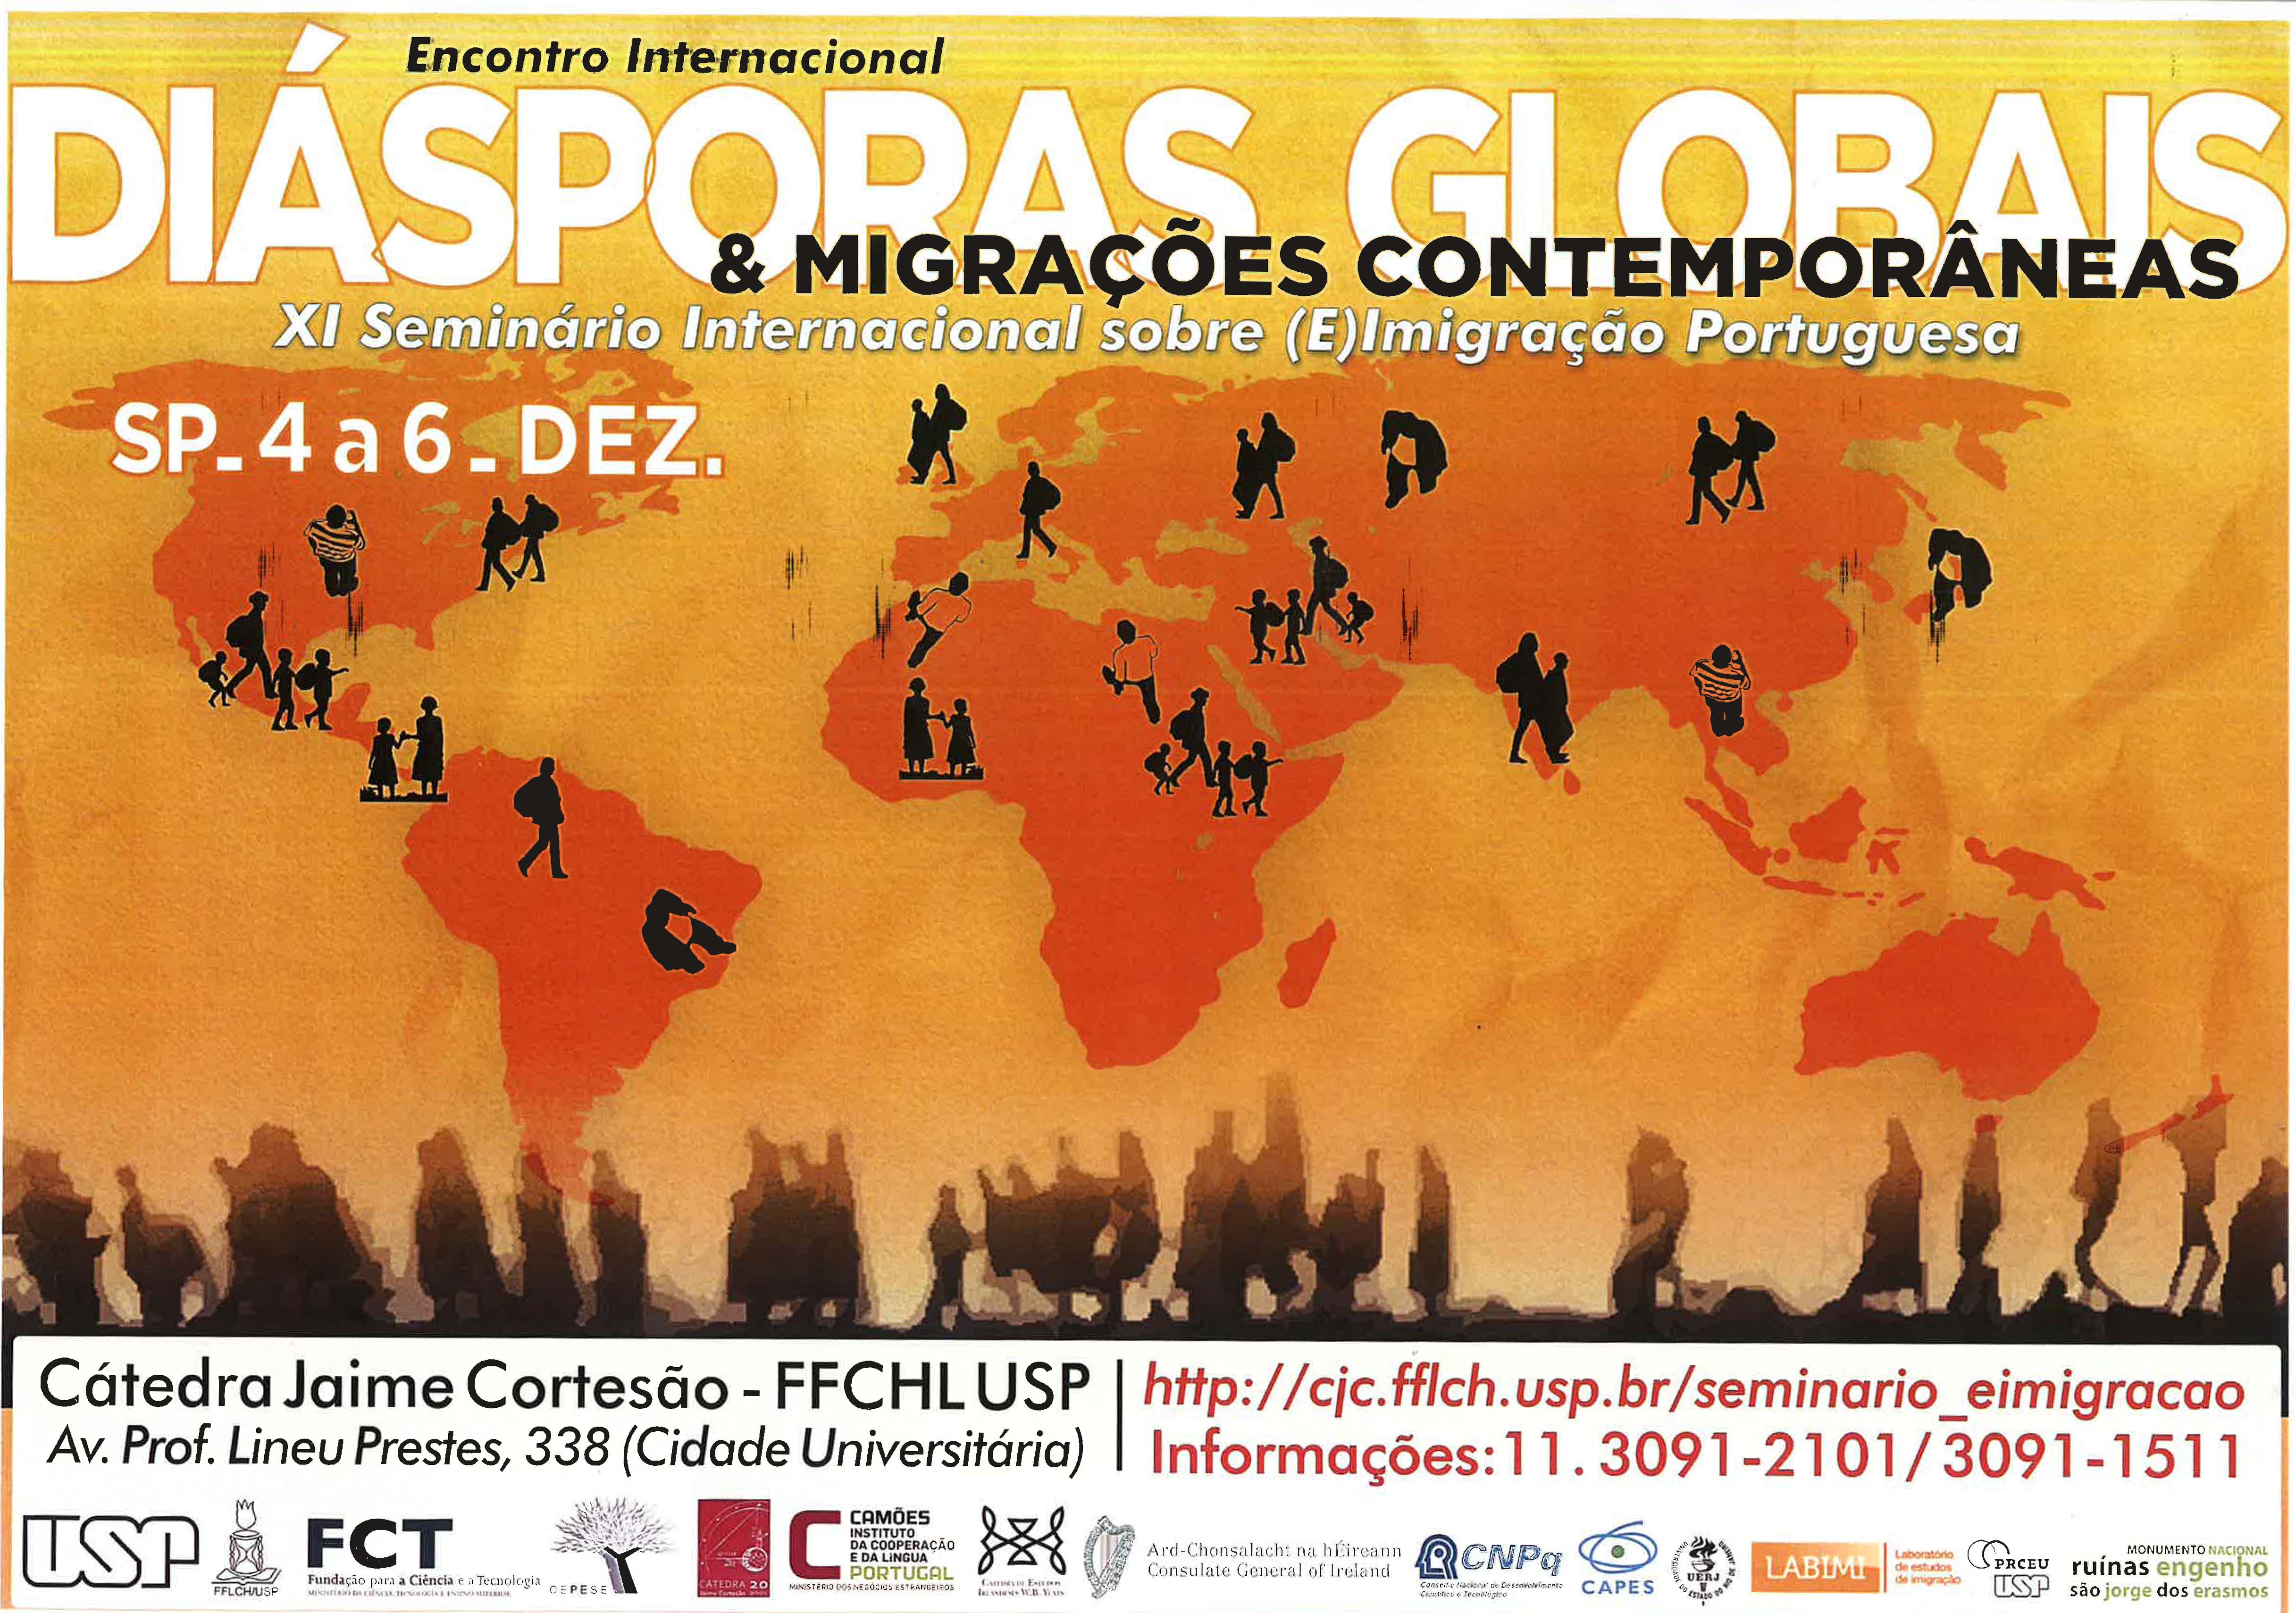 Cartaz com o texto "Diásporas Globais e Migrações Contemporâneas" e uma imagem dos continentes com a silhuetas de pessoas em diferentes lugares ao mesmo tempo